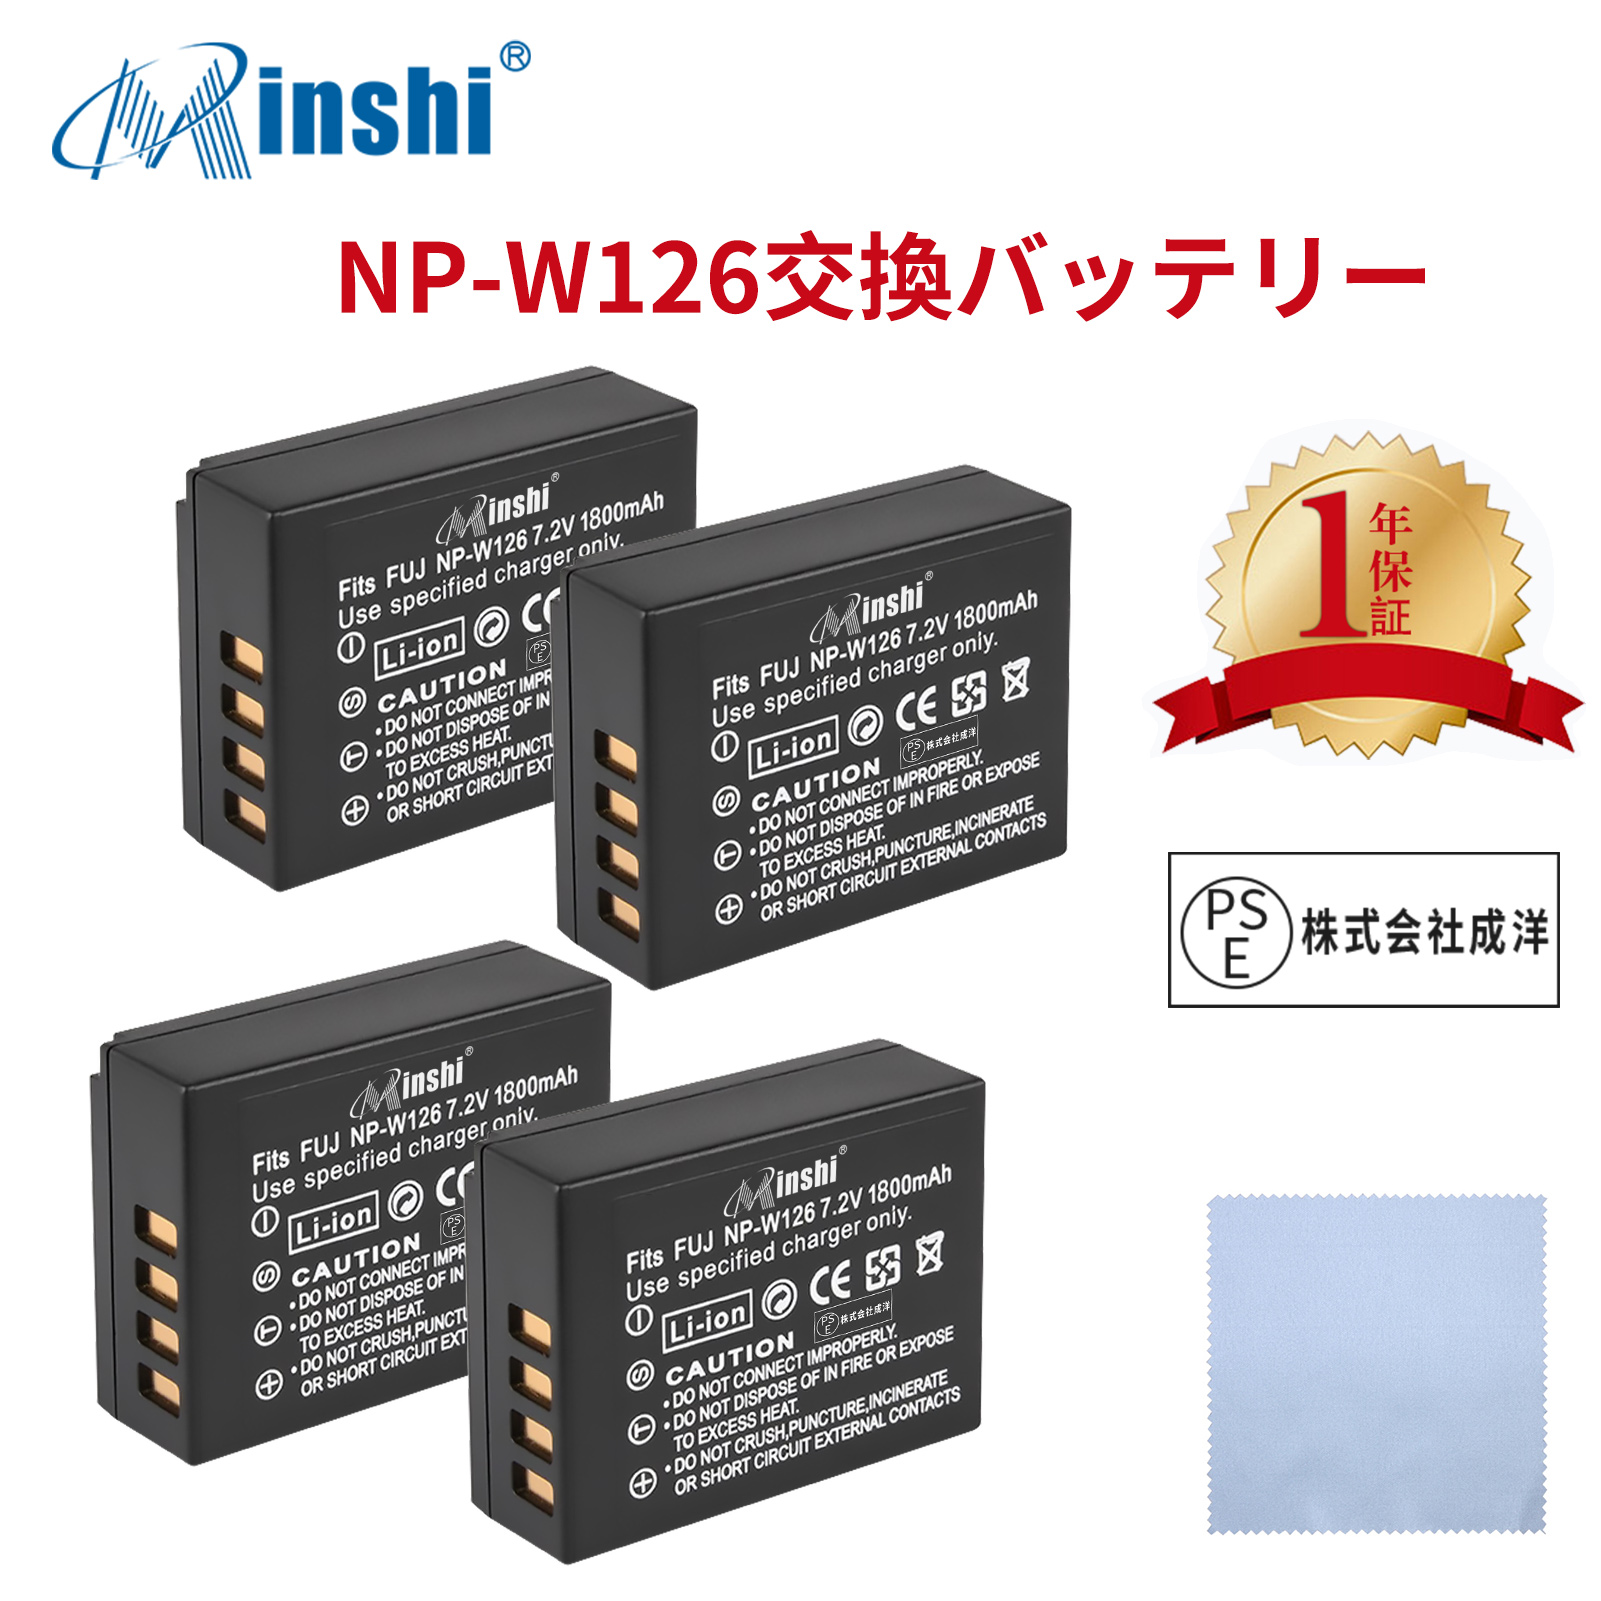 【4個セット&クロス付き】minshi FUJIFILM X-S10 NP-W126 【1800mAh 7.2V】PSE認定済 高品質交換用バッテリー